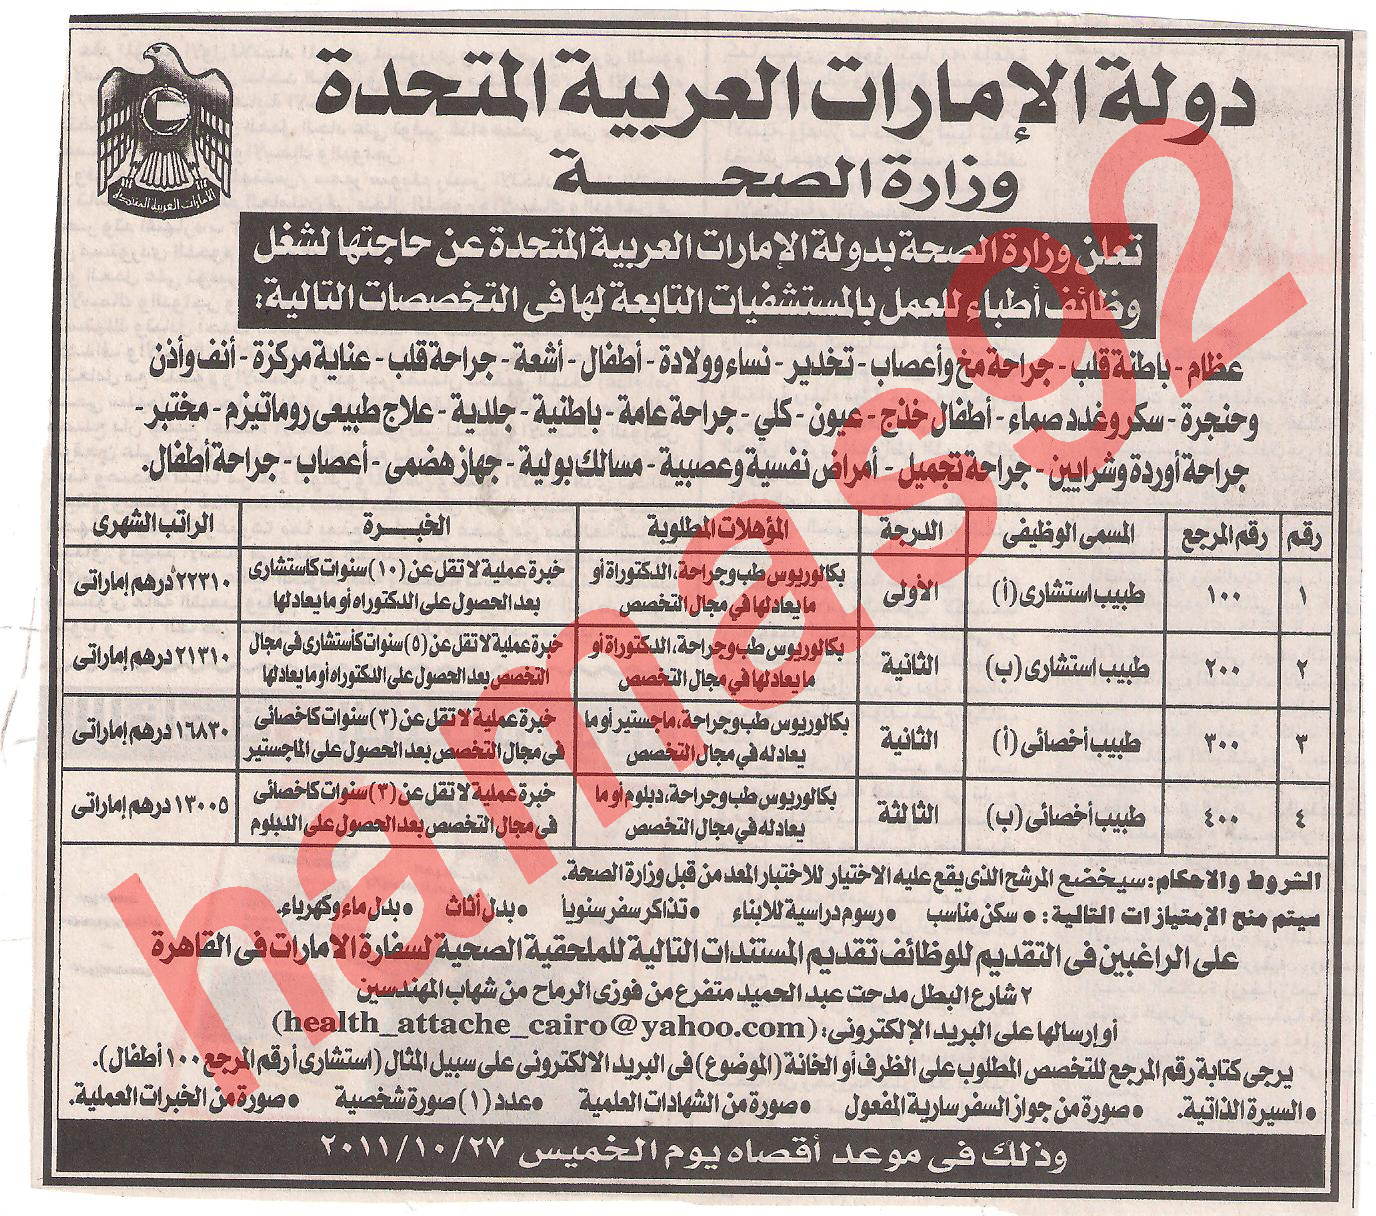 وظائف خالية فى سفارة دولة الامارات بالقاهرة , وزارة الصحة الاماراتية  Picture+015